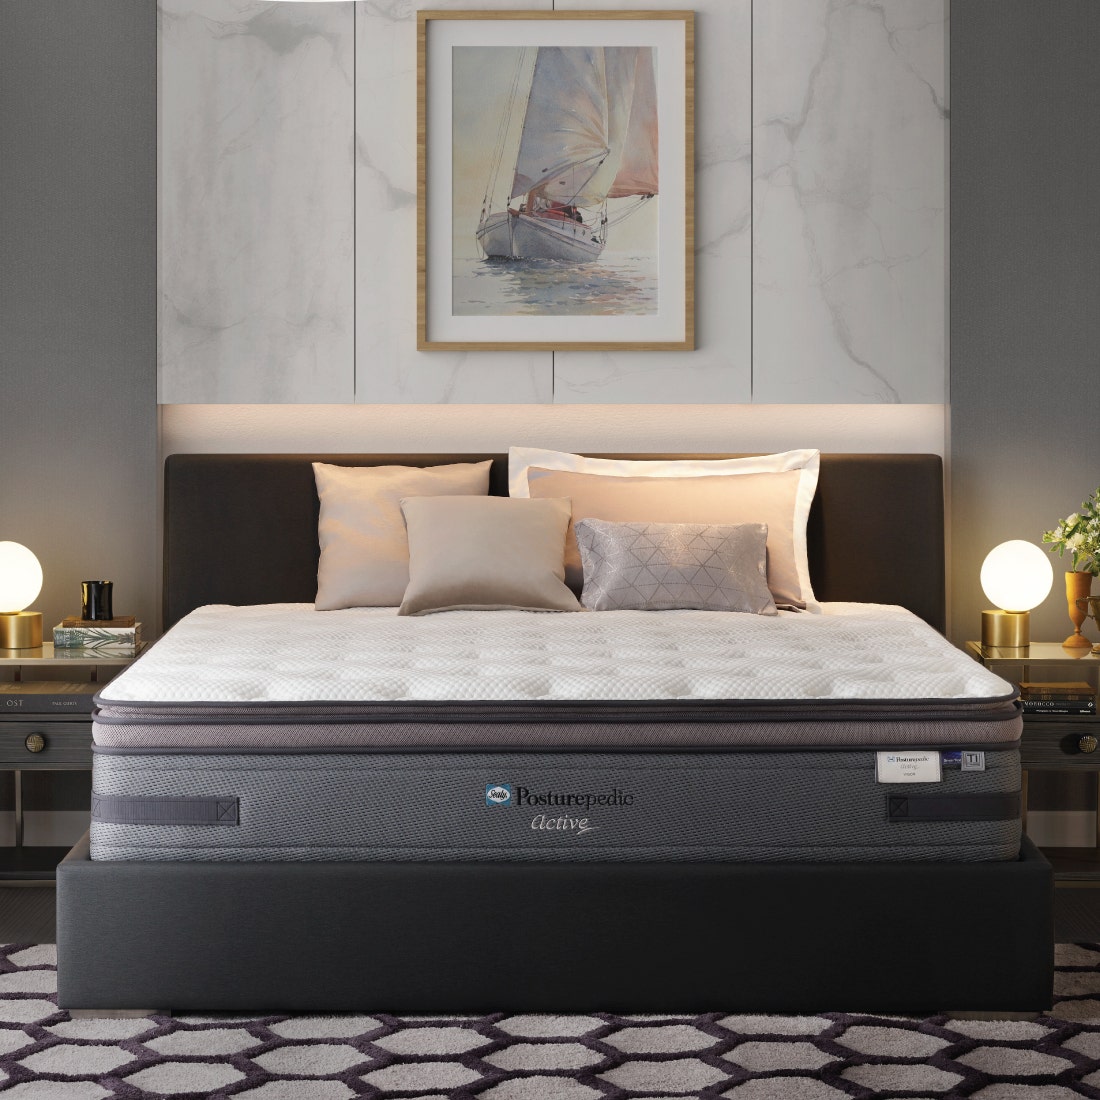 39011530-mattress-bedding-mattresses-spring-mattresses-31